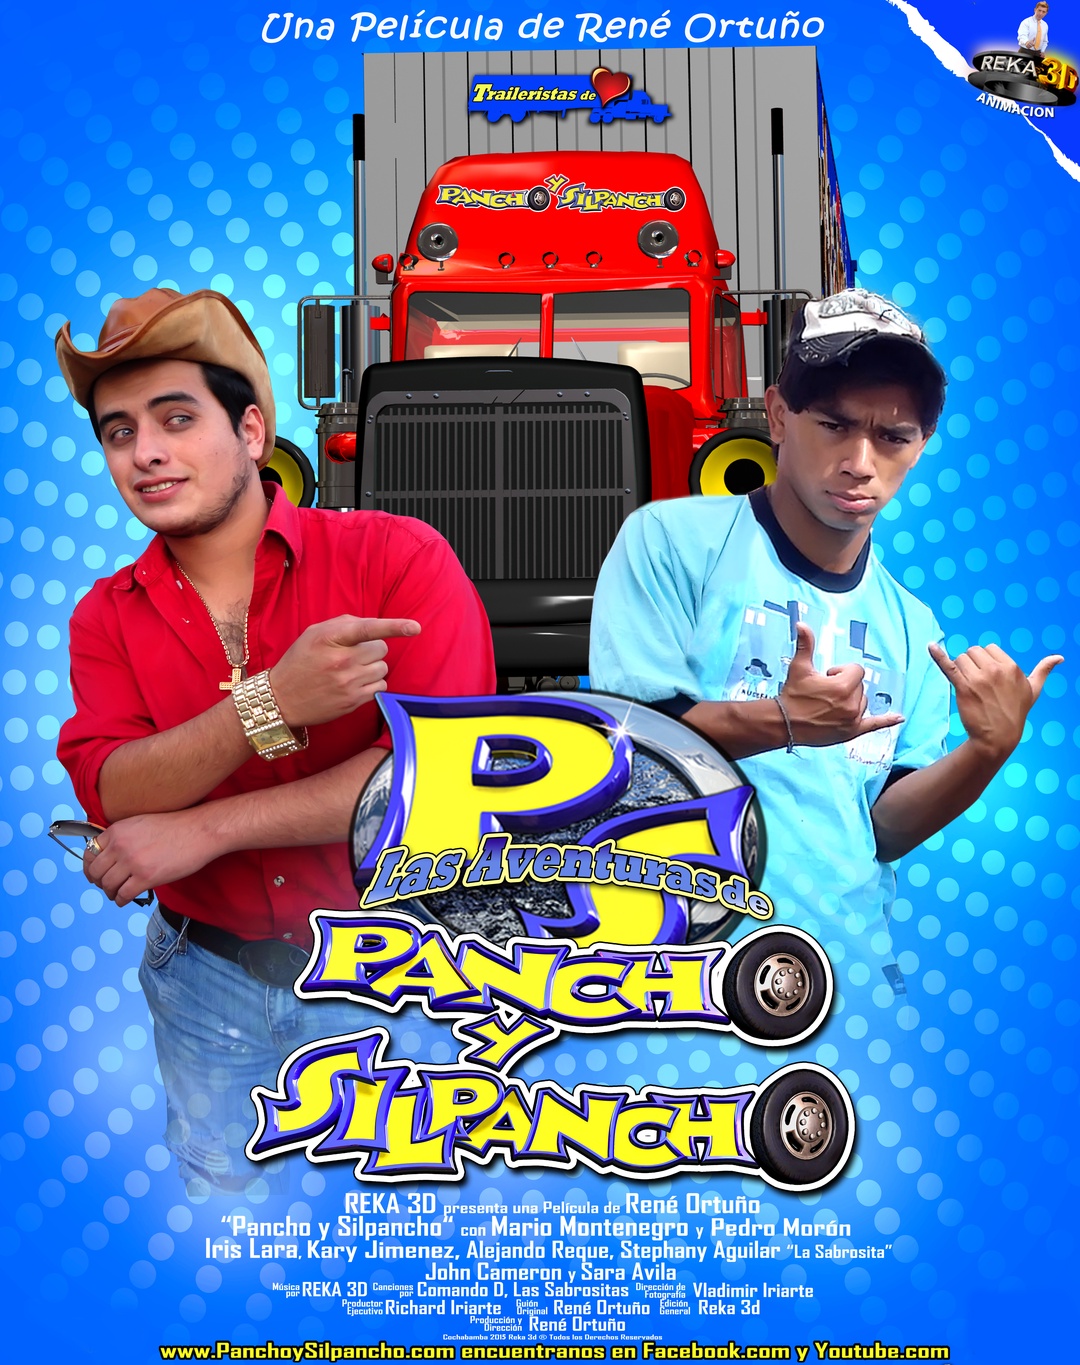 Pancho y Silpancho